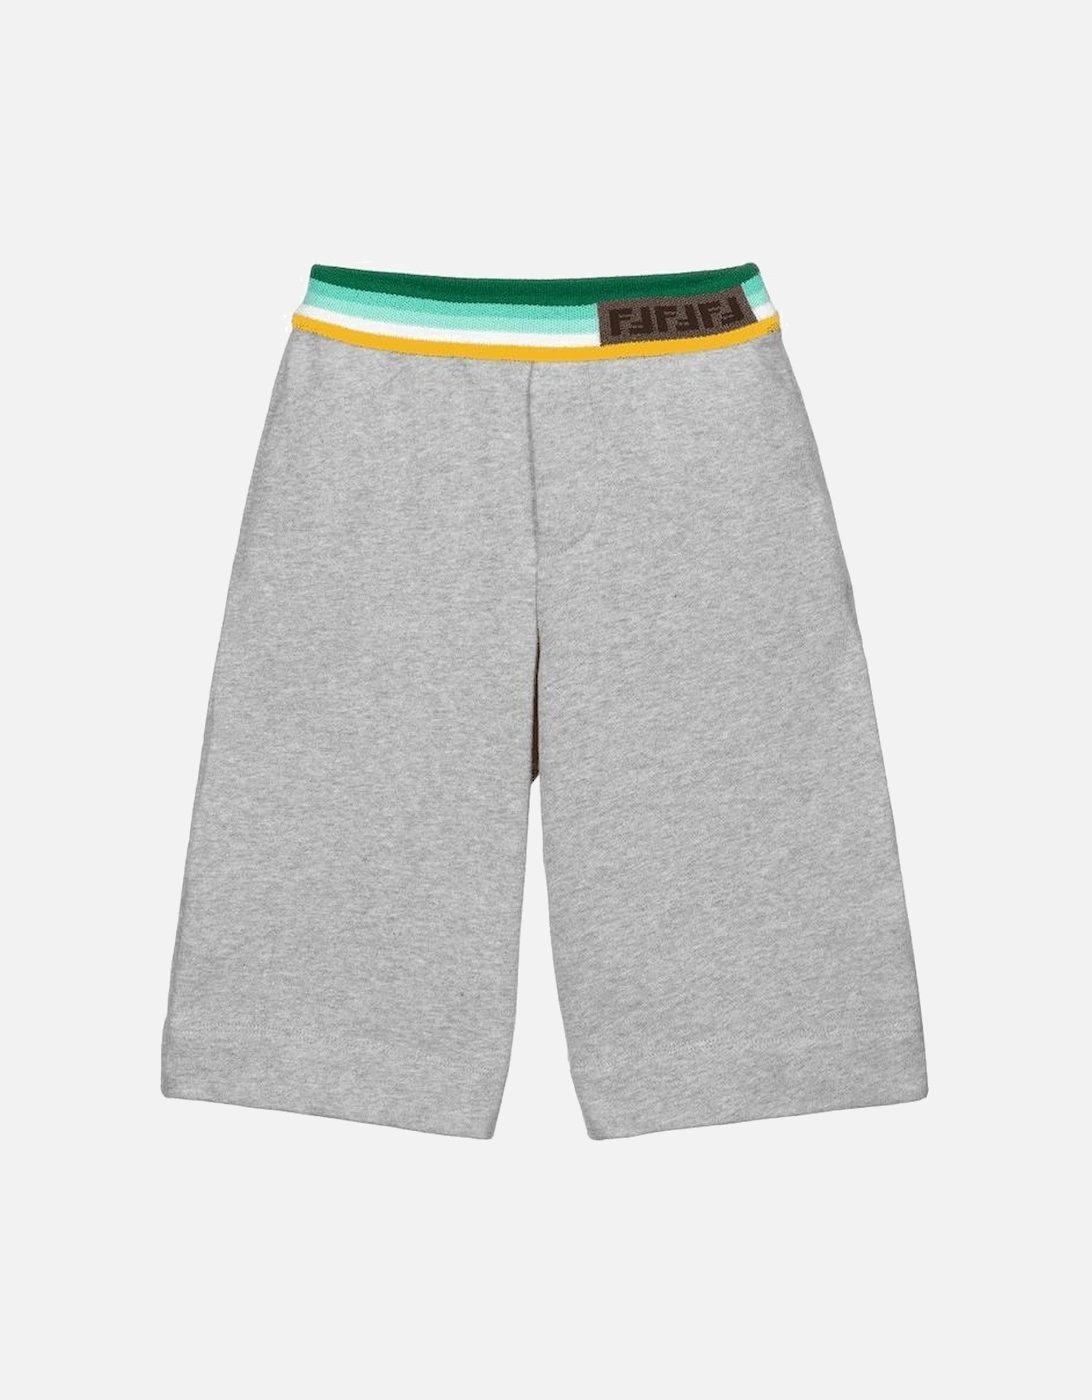 Boys Grey FF Logo Trim Shorts, 2 of 1